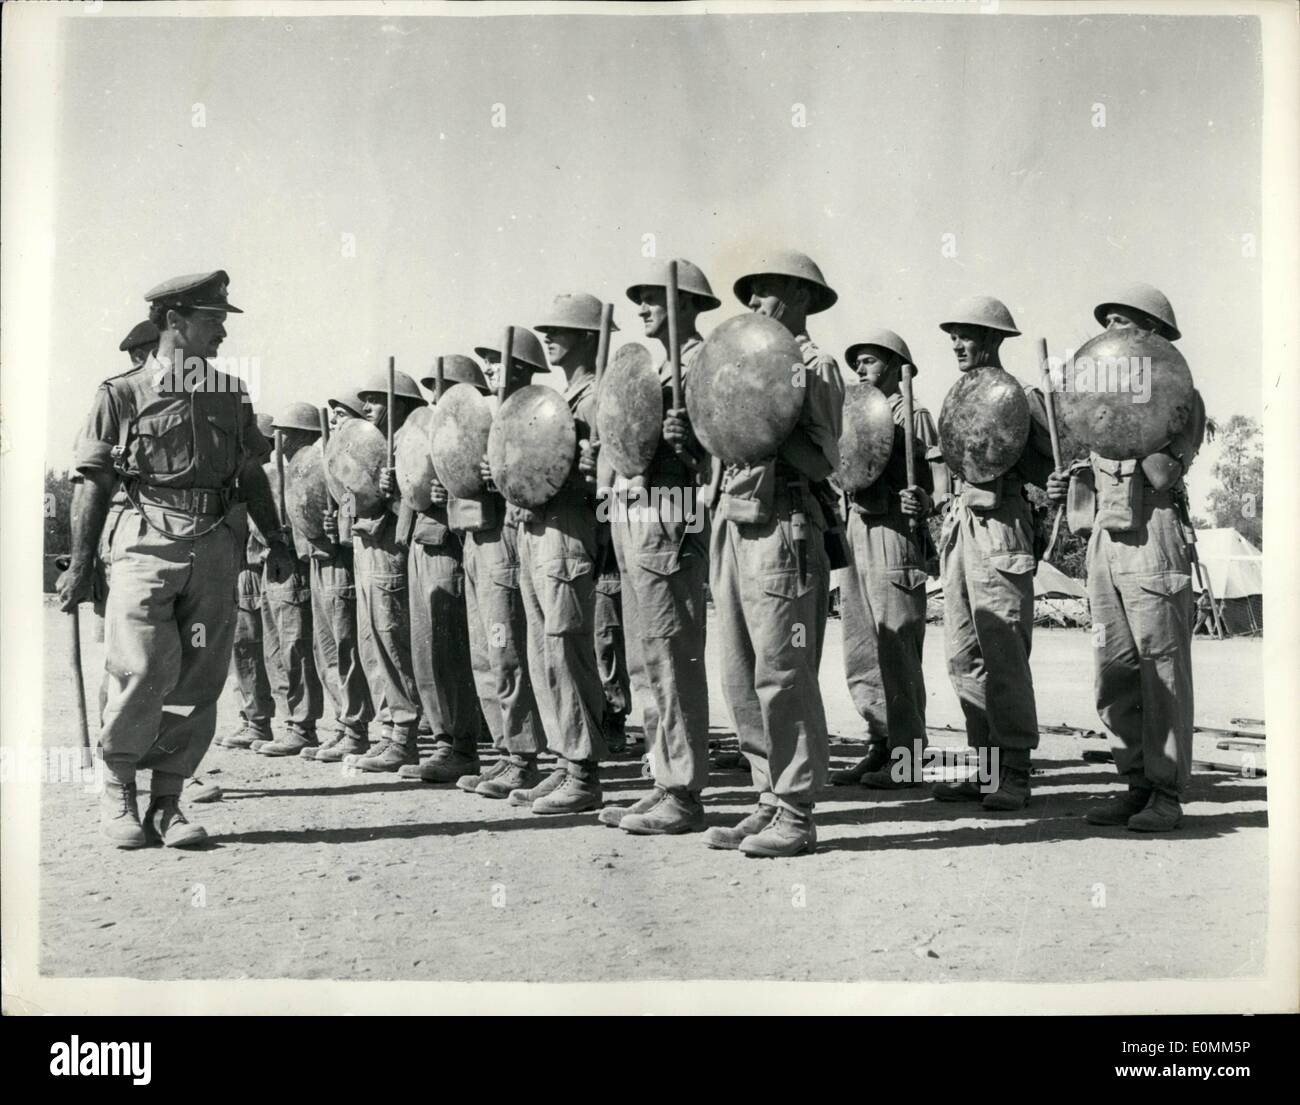 10 ottobre 1955 - truppe britanniche a Cipro ISSd con Batons e Shields - sostituendo i loro fucili come armi anti-sommossa.: Dopo la dichiarazione del governatore del maresciallo di Cipro Sir John Hardin - le truppe britanniche - 1°. reggimento di battaglione Stafford meridionale sono stati rilasciati con scudi metallici (coperchi di pattumiera) e battoni con cui sedare i disordini. Questa è la prima volta nella storia dell'esercito britannico che Tommy Atkins deve deporre la sua eifle e baionetta per un bastone e un coperchio della pattumiera. Foto mostra gli uomini del regt di Stafford Sud Foto Stock